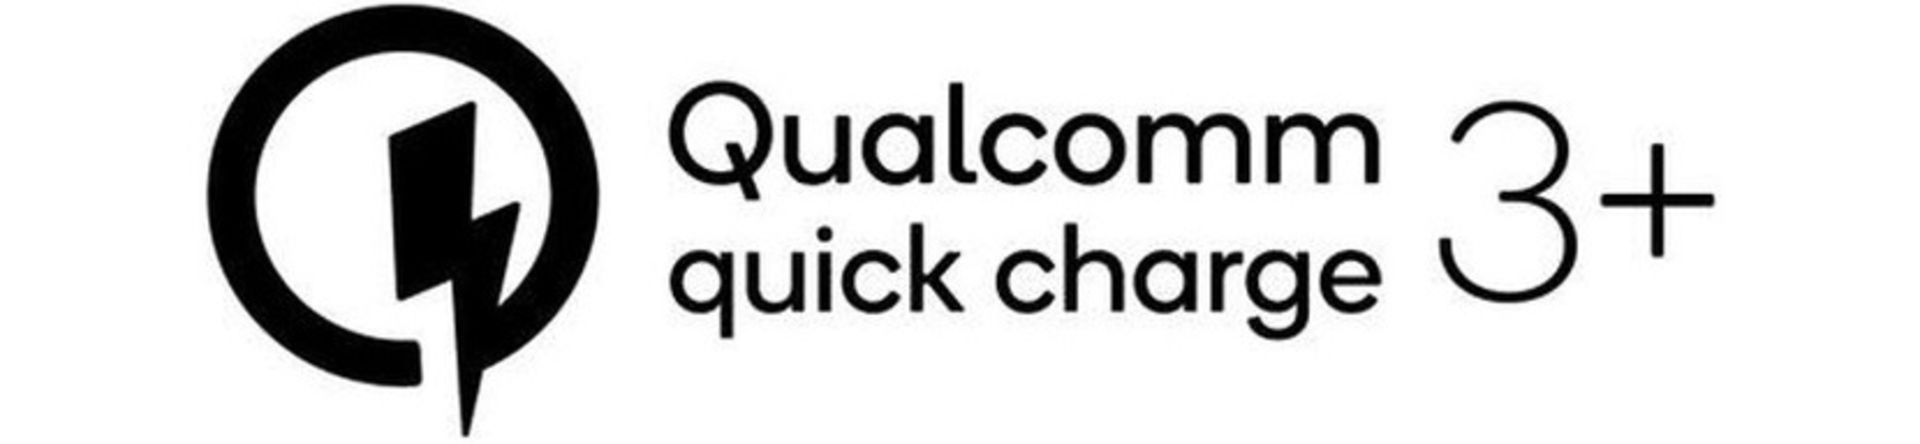 کوییک شارژ 3 پلاس کوالکام / Qualcomm Quick Charge 3 Plus